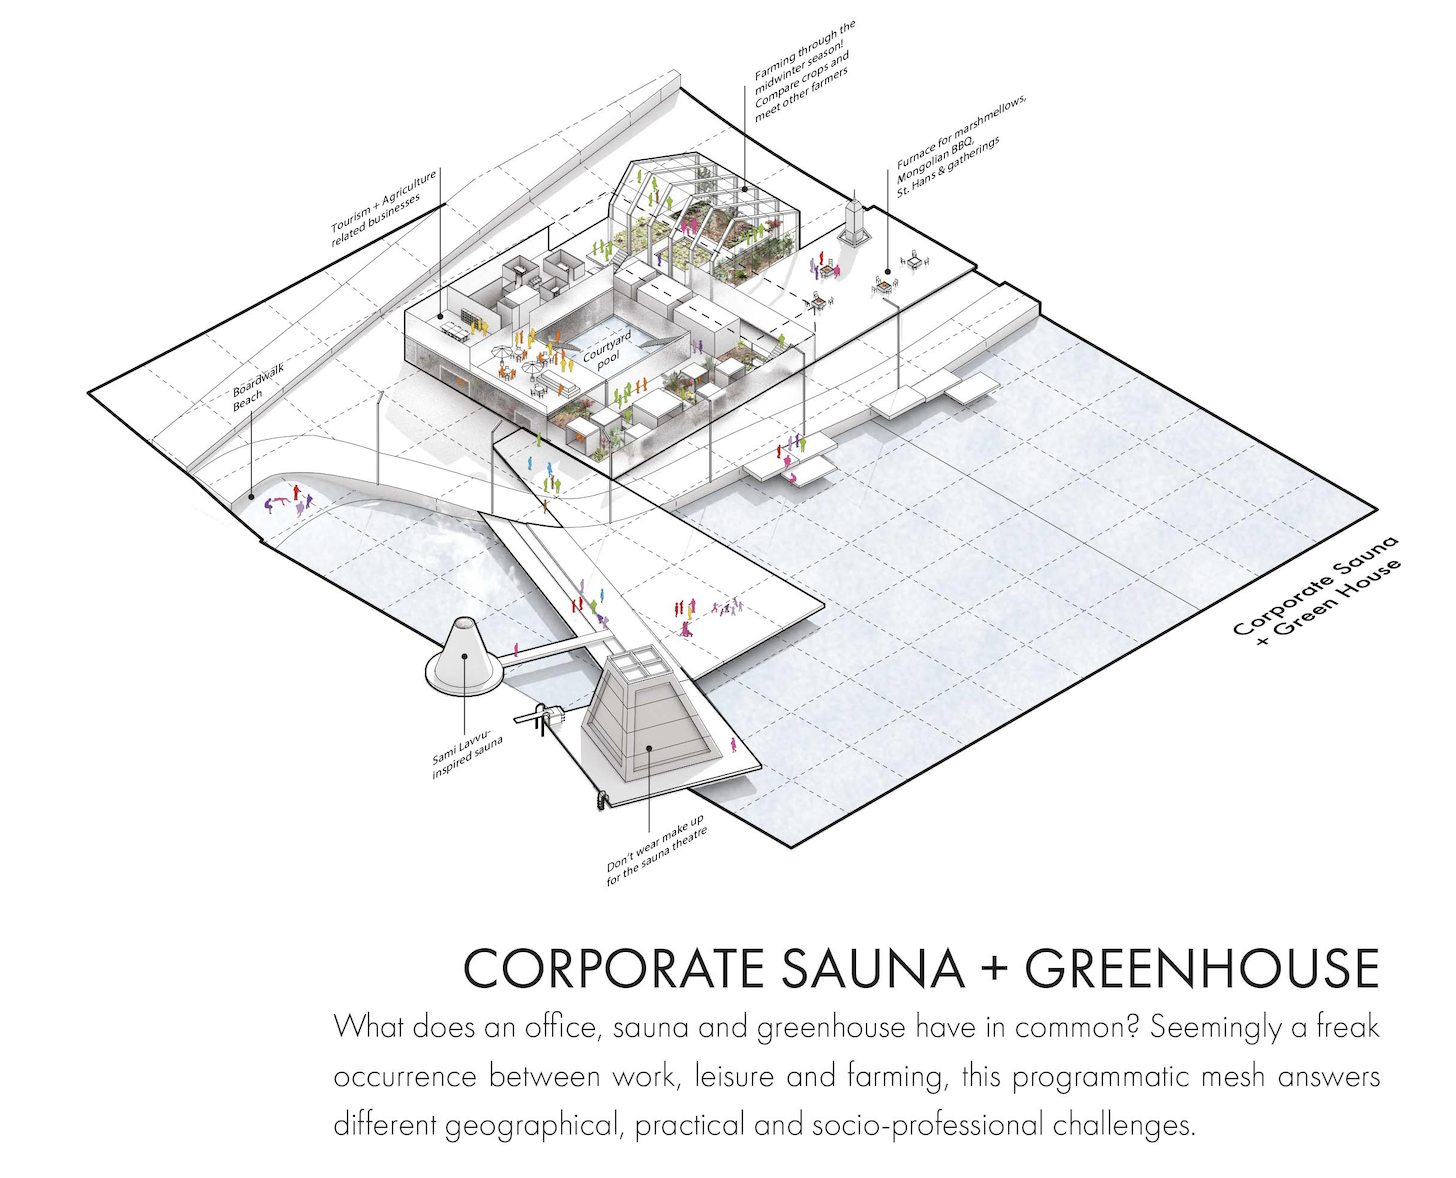 Corporate sauna + greenhouse